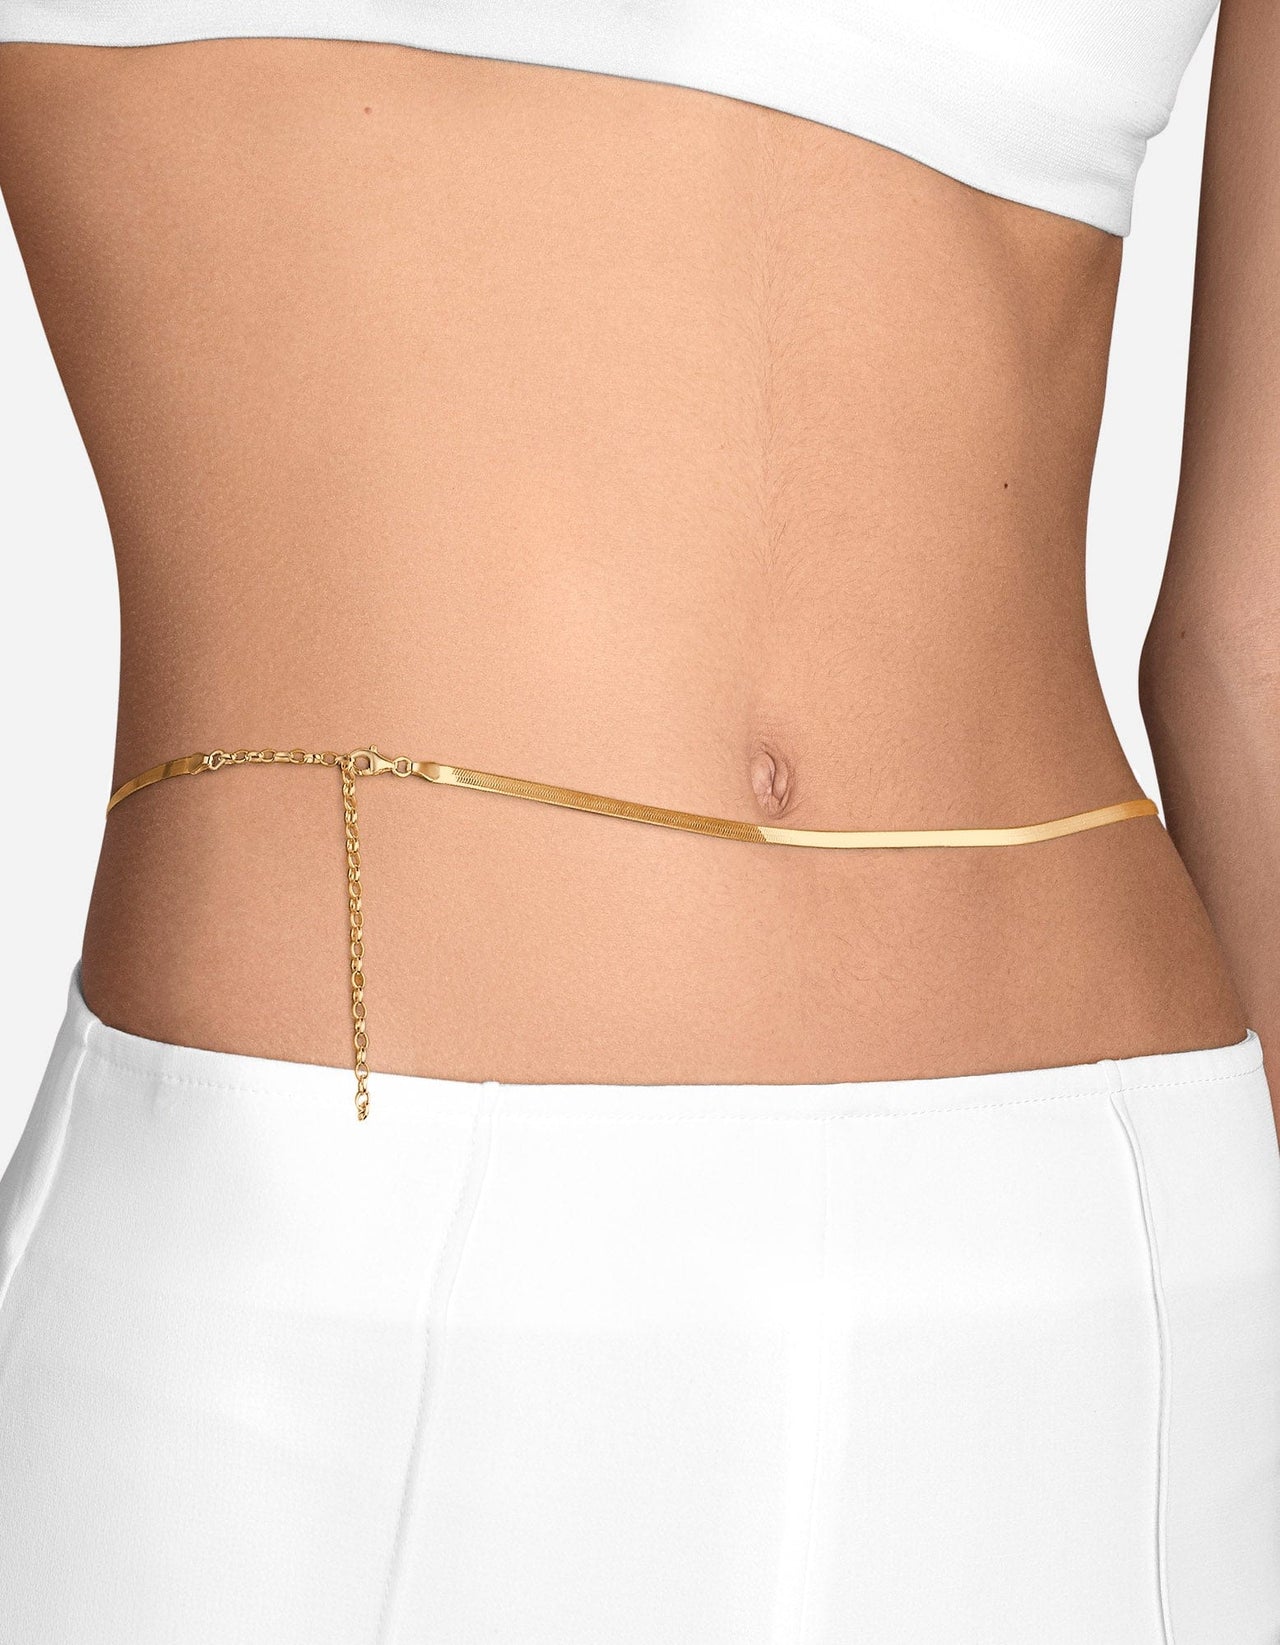 Women Long Tassel Moon Waist Chain Belt Multilayer Belly Chain for Dress  Jeans